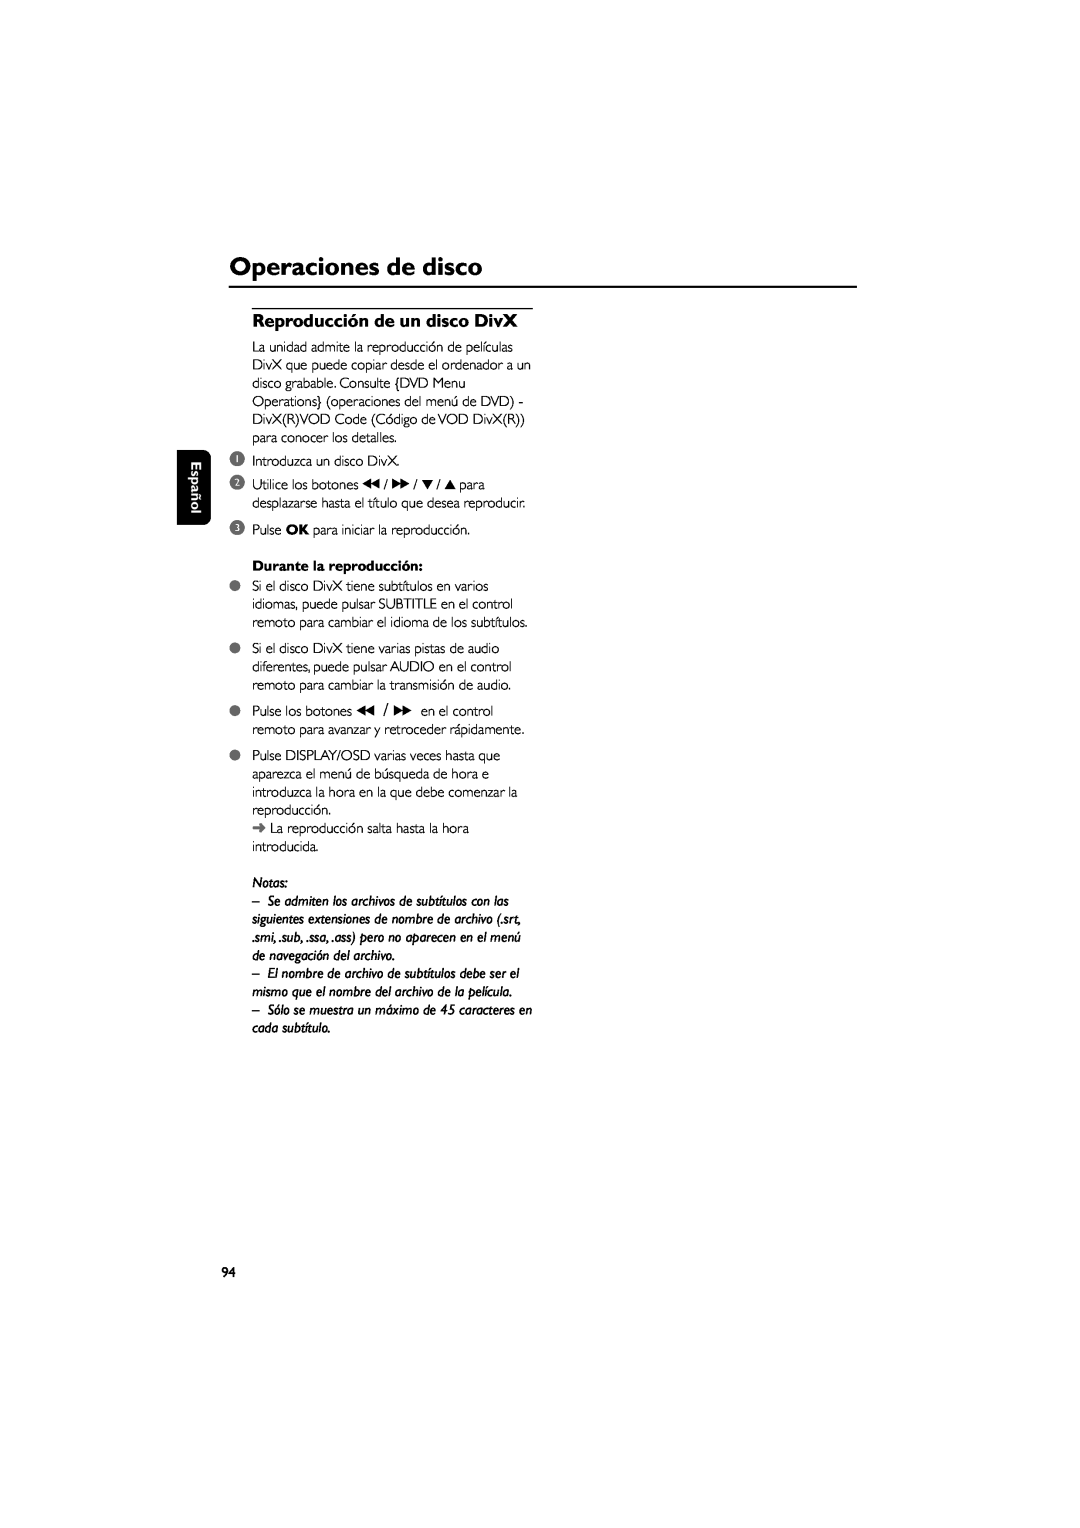 Philips MCD139B user manual Reproducción de un disco DivX, Durante la reproducción, Operaciones de disco, Español, Notas 